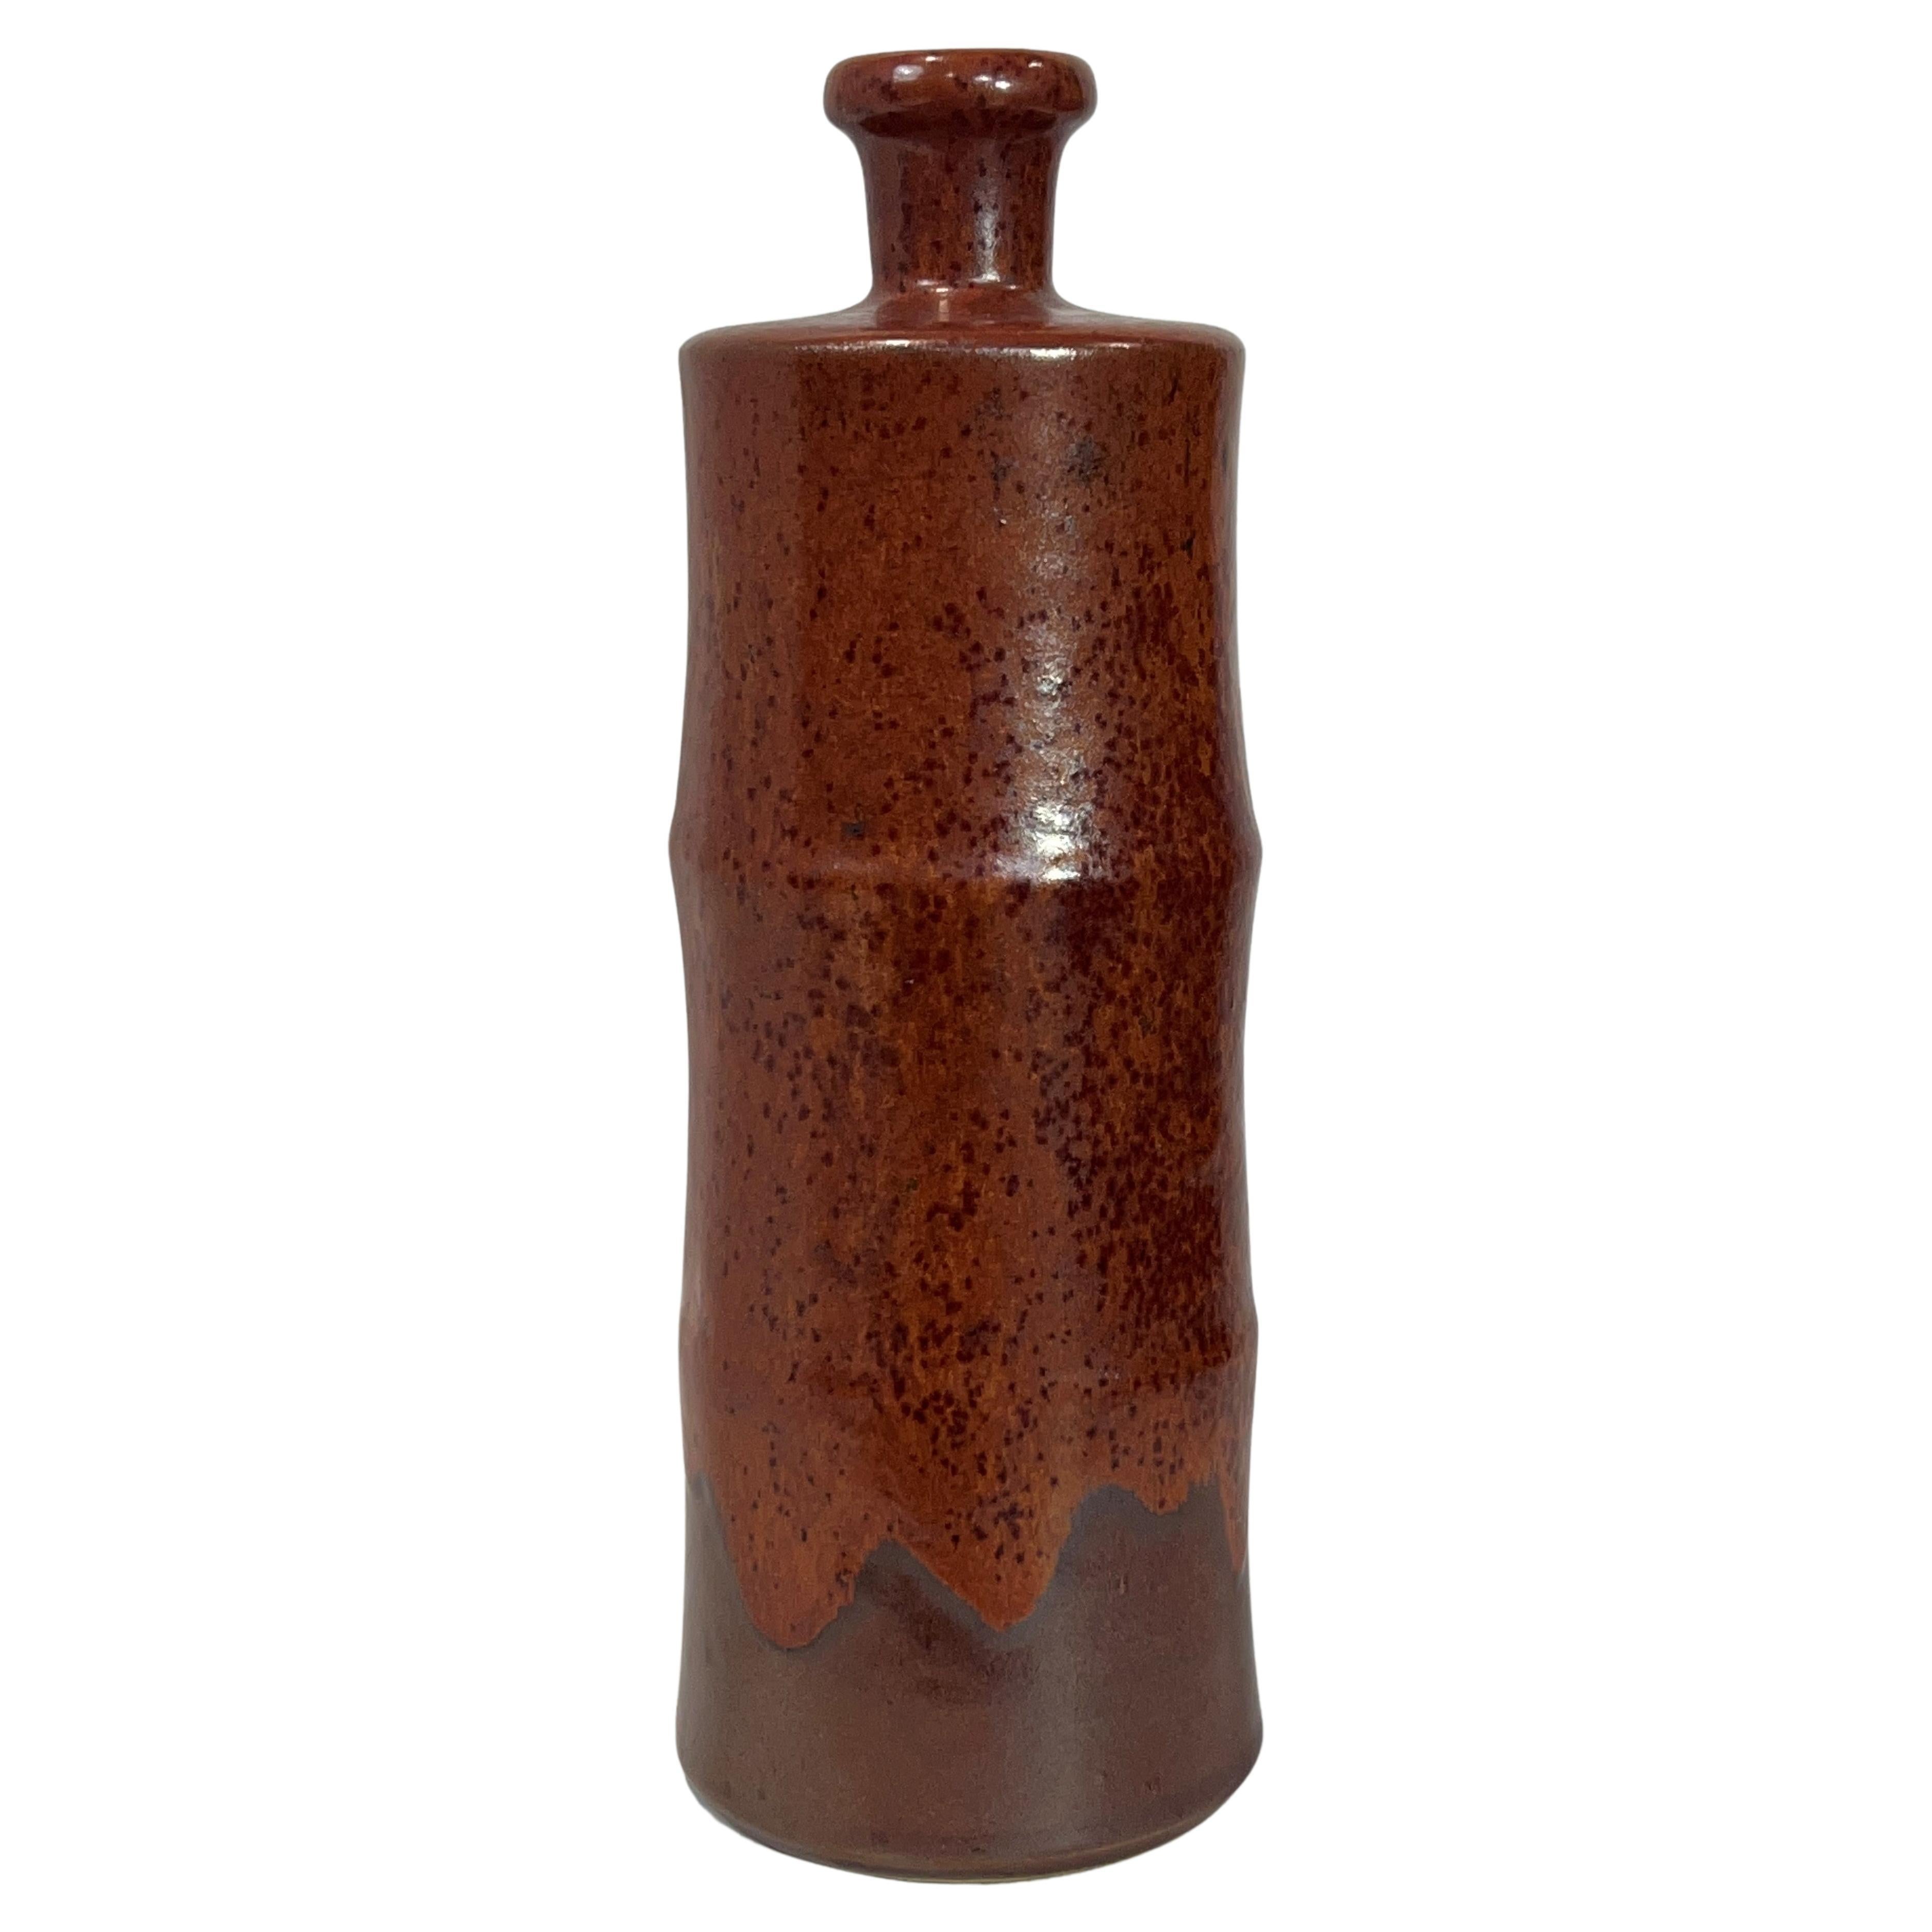 Horst Kerstan Bottle Vase Large Fantastic Brown Micro-Crystalline over Brown